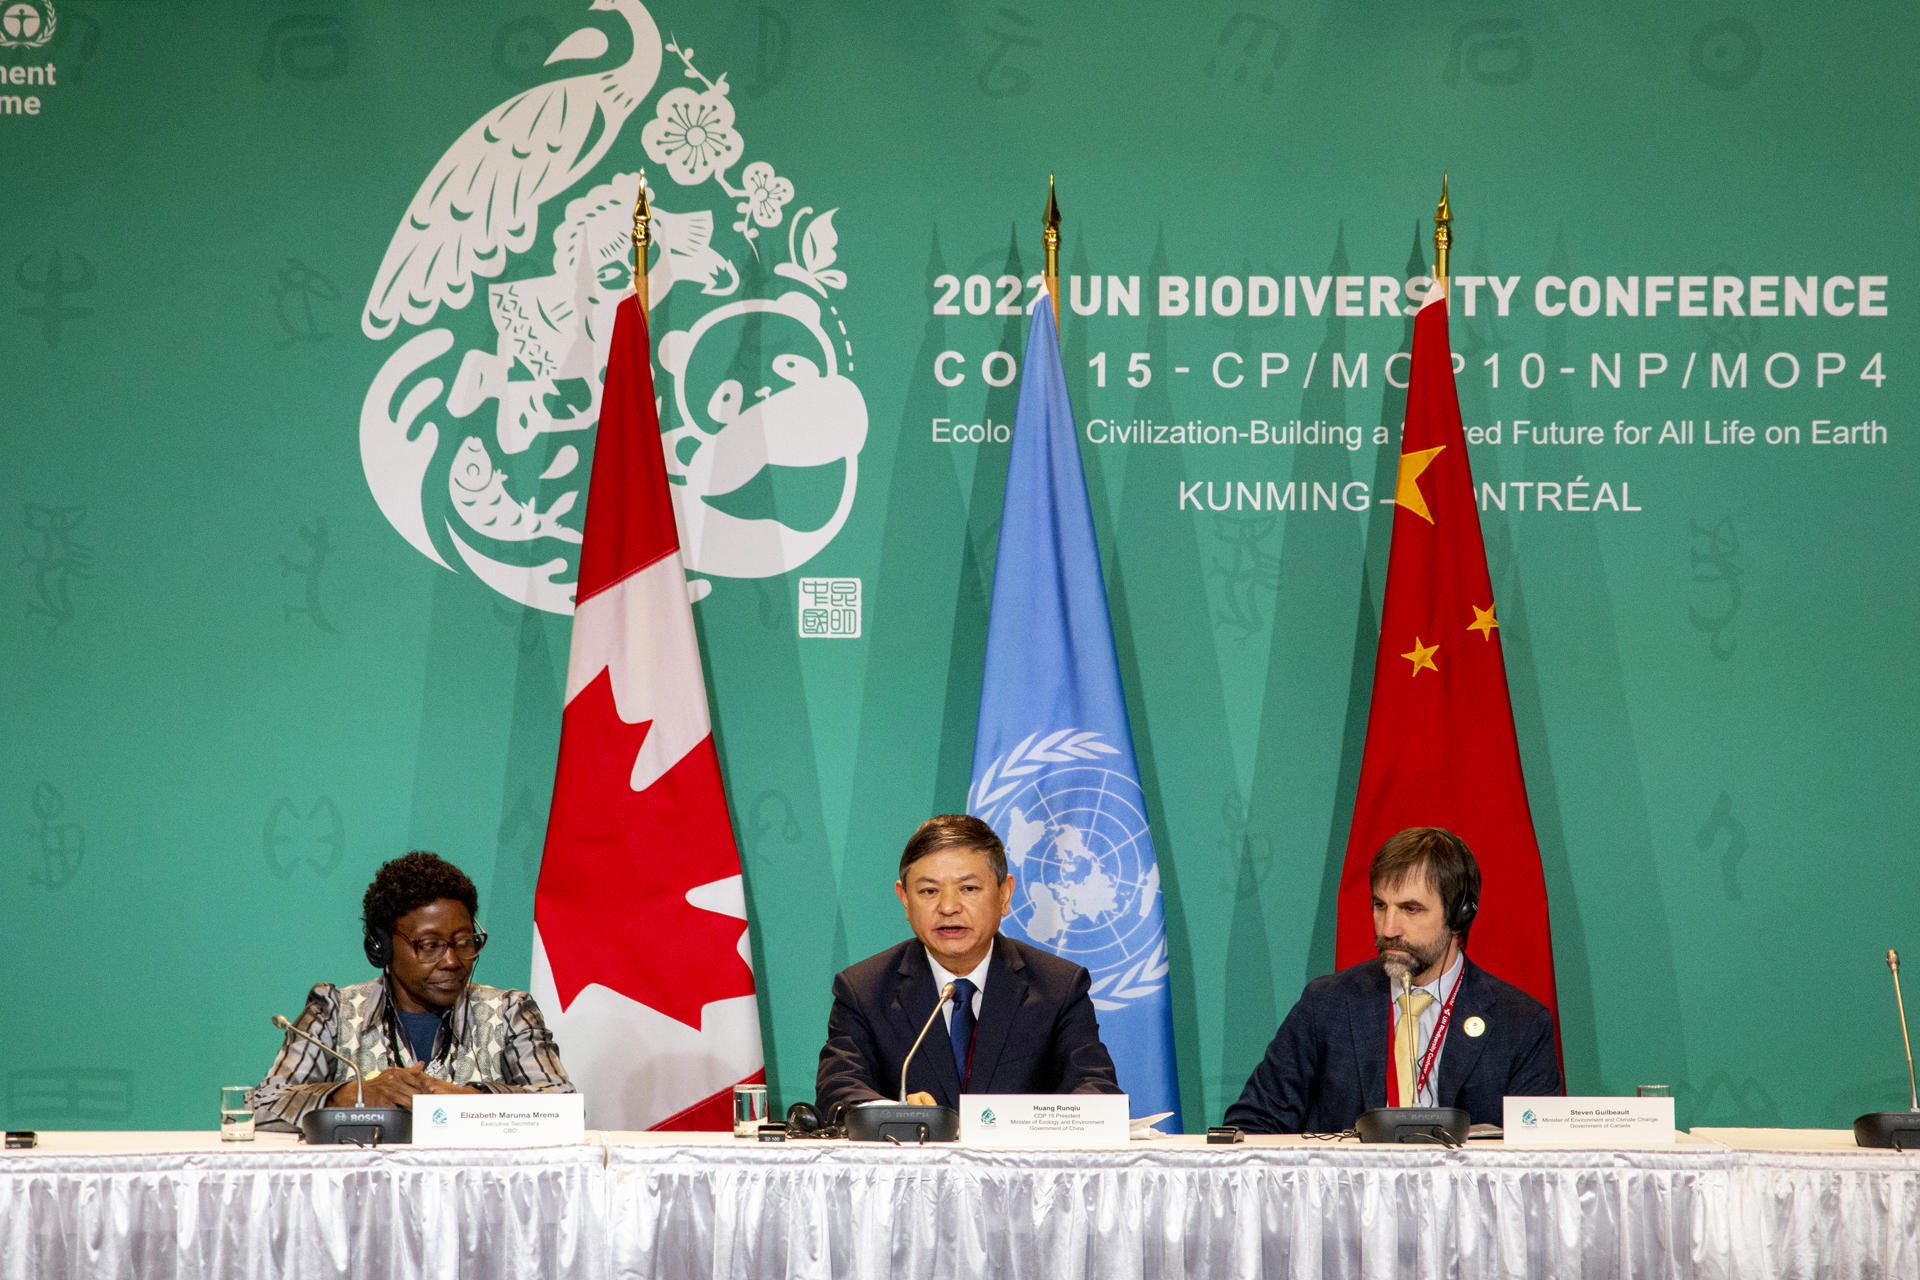 La financiación de la biodiversidad sigue bloqueando el acuerdo en COP15